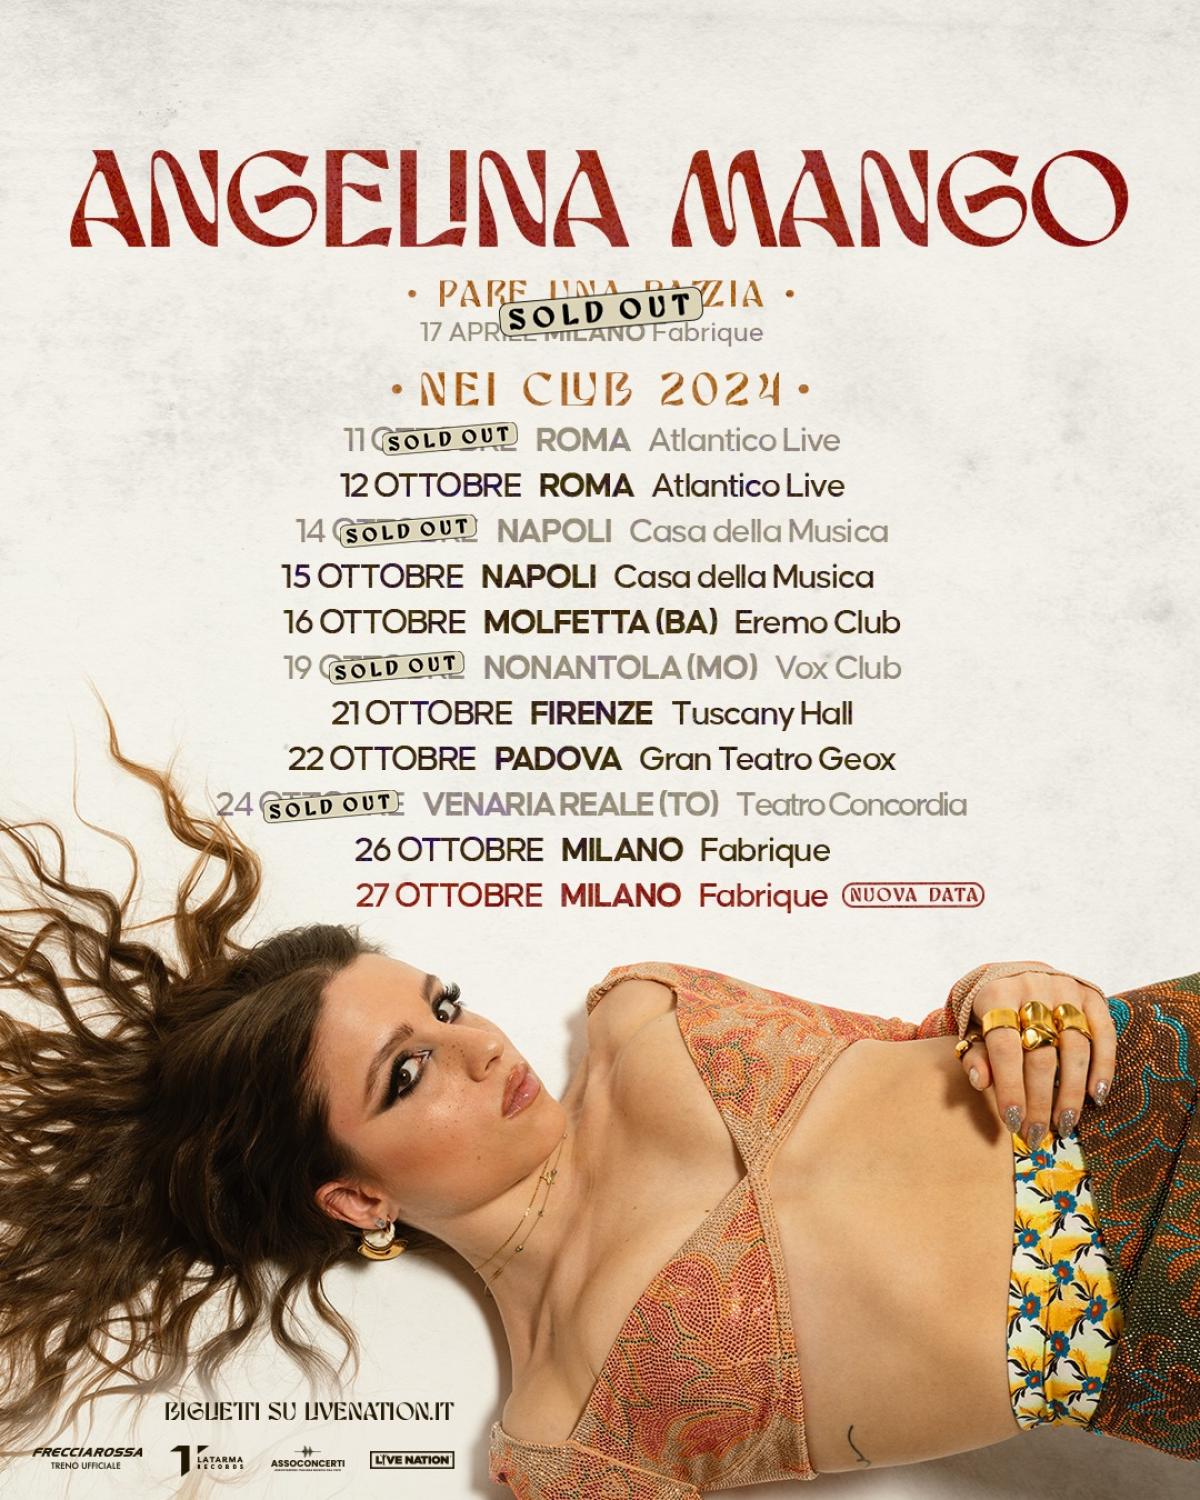 Angelina Mango at Fabrique Milano Tickets